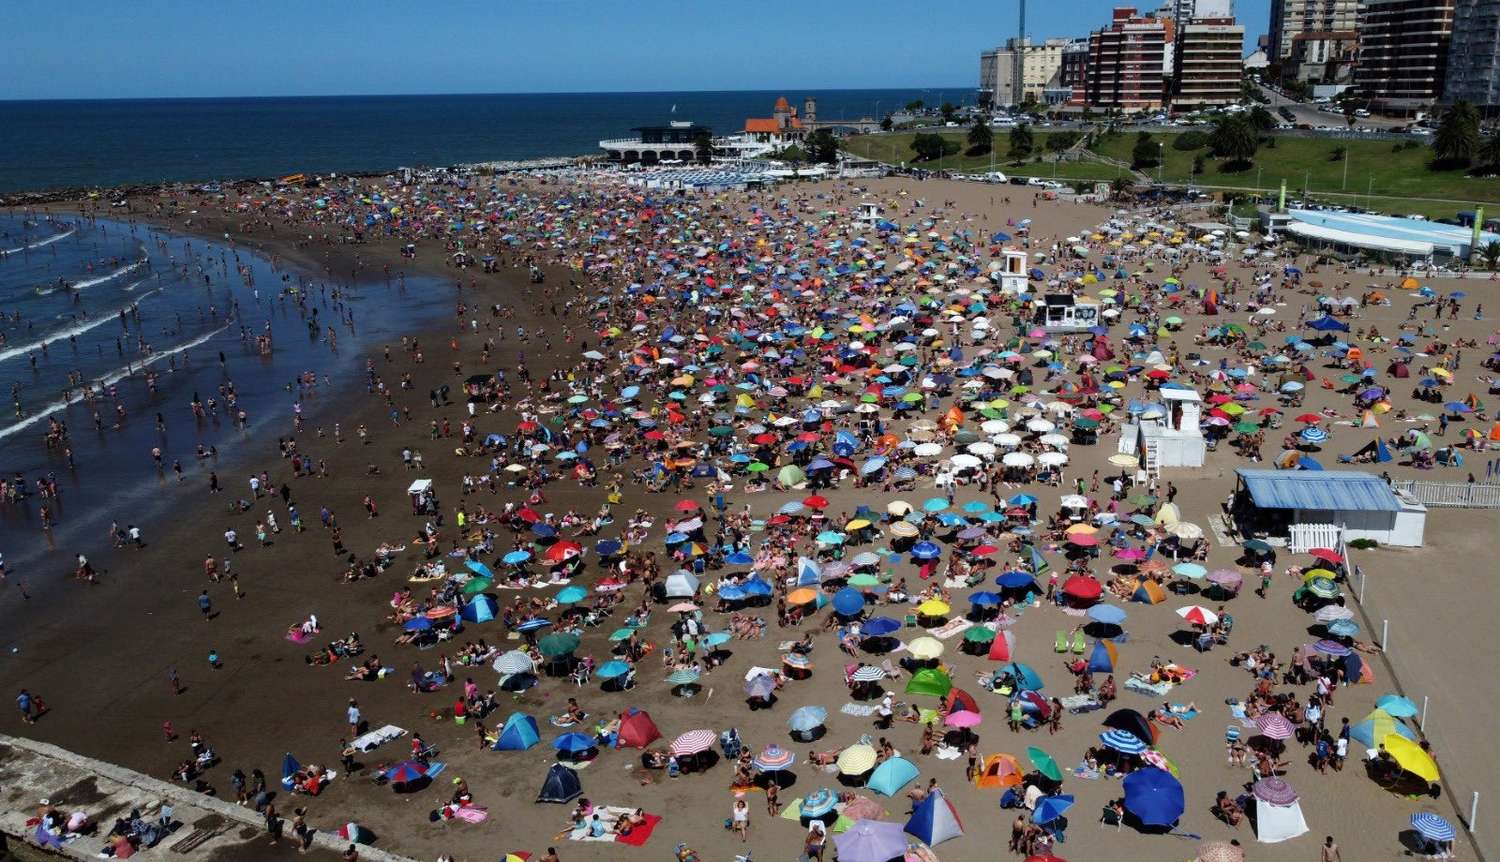 Arribaron 170 mil turistas a Mar del Plata por el feriado de Semana Santa: “Récord absoluto” dijeron desde el municipio